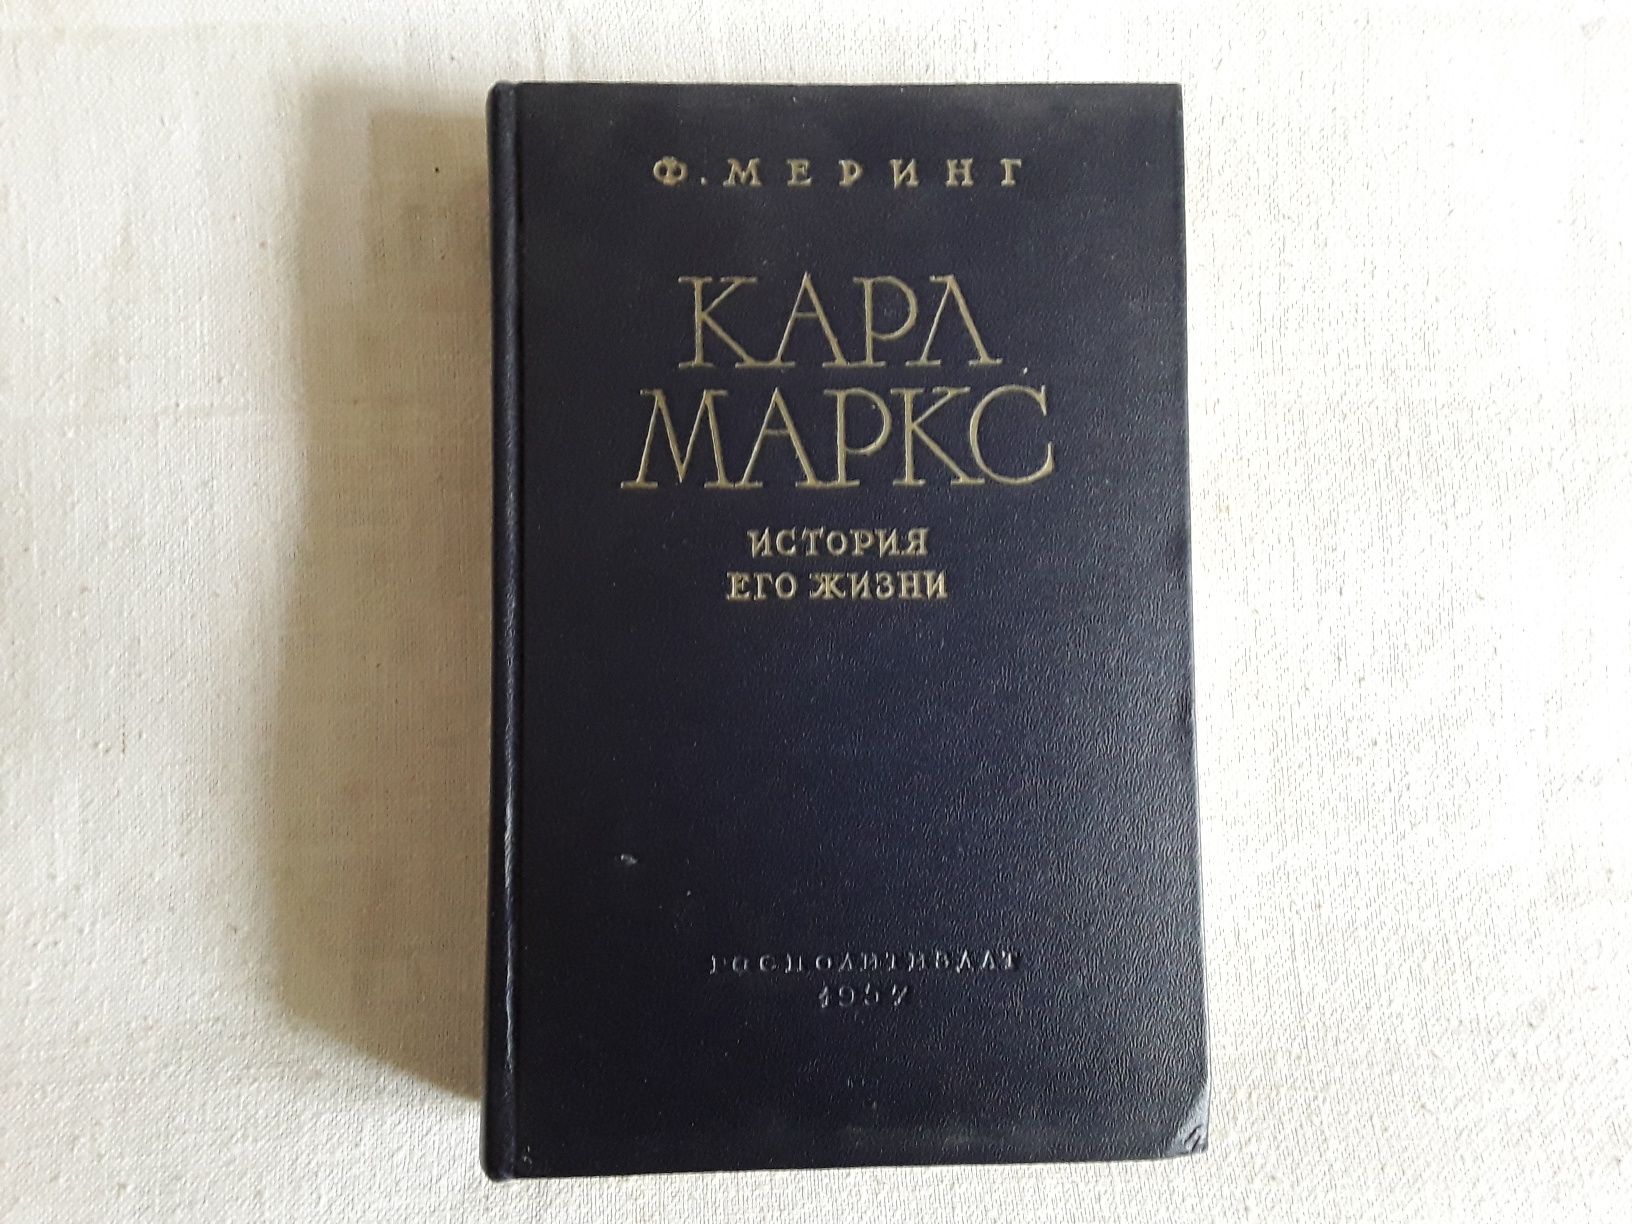 Книжка про К. Маркса.